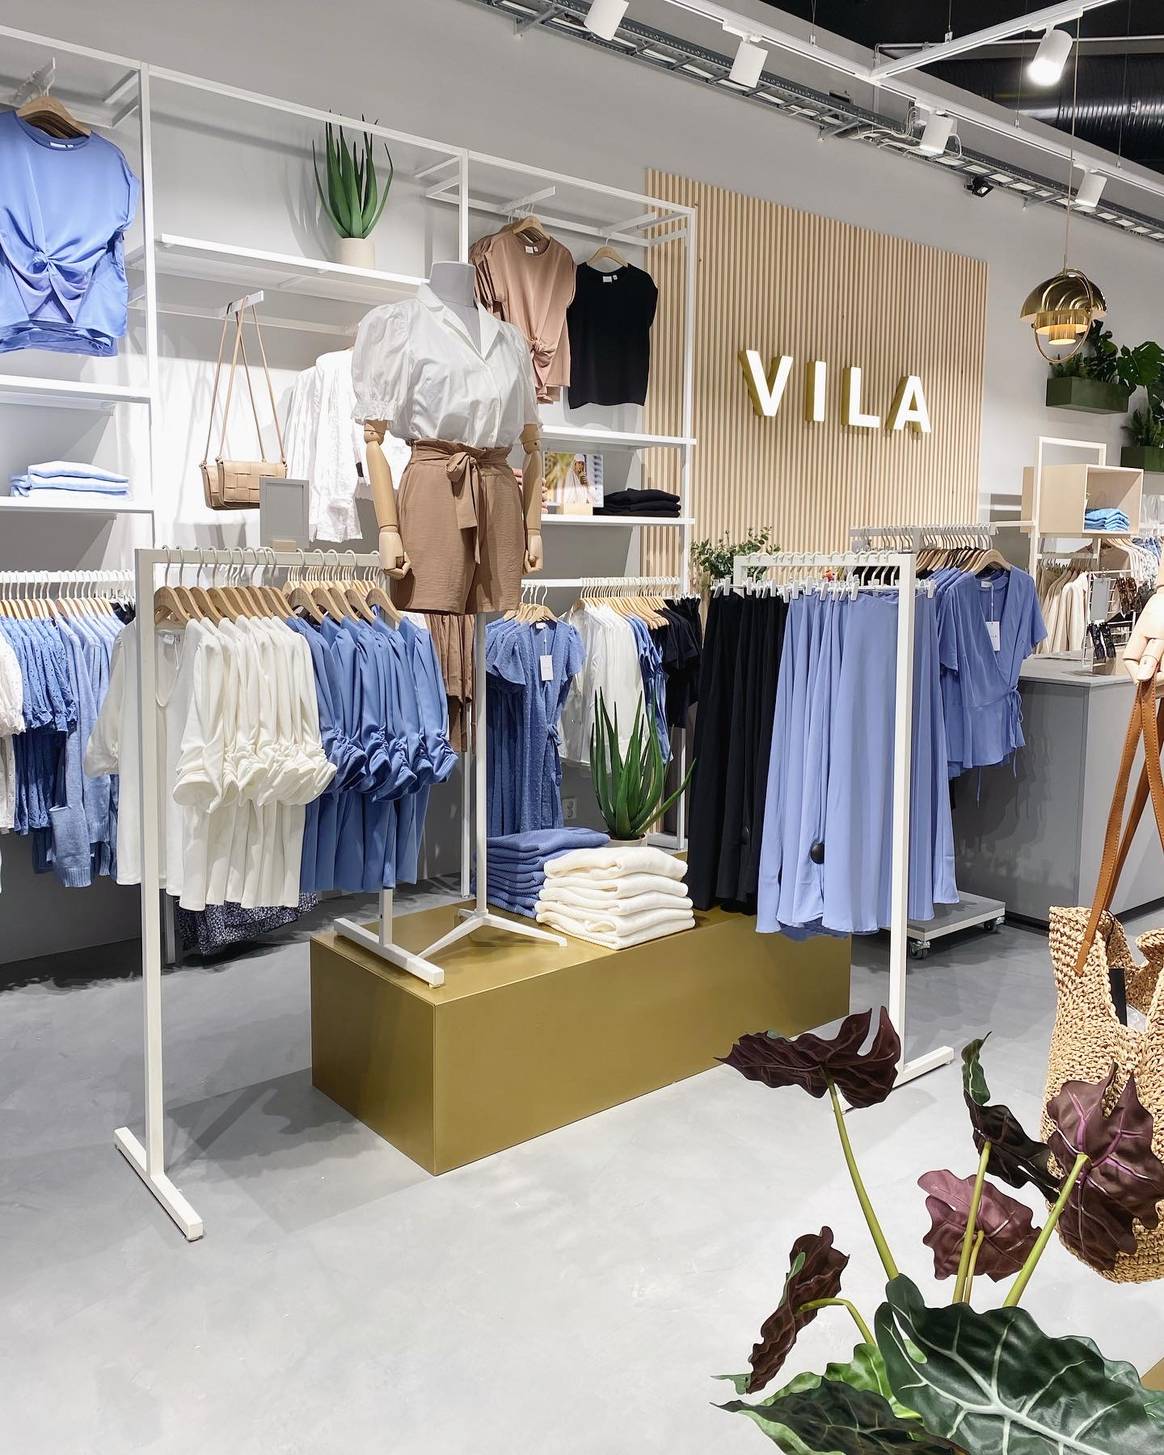 De eerste fysieke Vila-winkel in België. Beeld: Vila